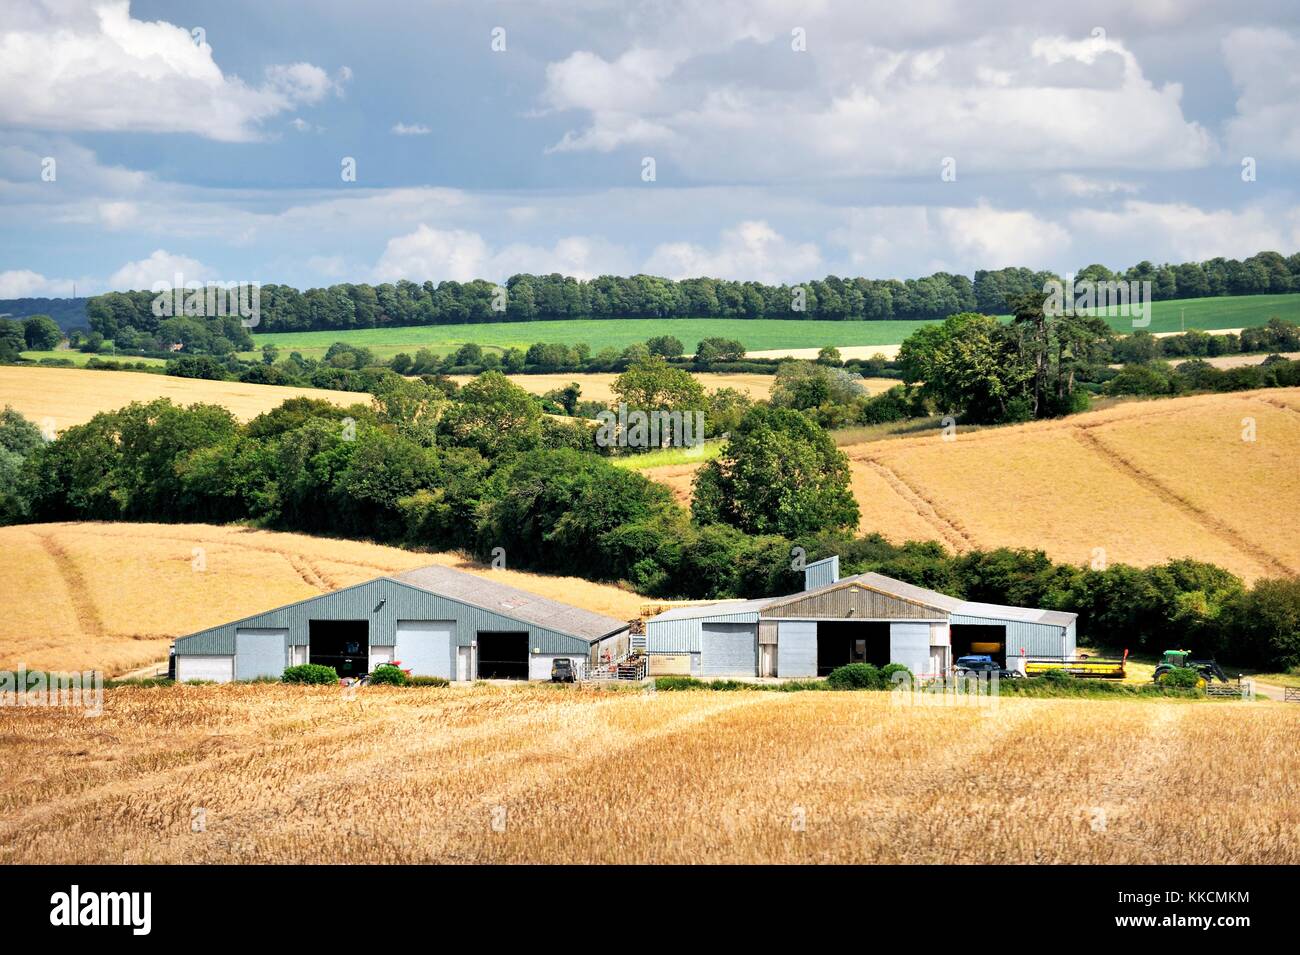 Los graneros agrícolas modernas y las tierras de cultivo de los campos de cultivo agrícola en las zonas rurales de Chalk downs paisaje de Wiltshire. Cerca de Avebury. Verano Foto de stock